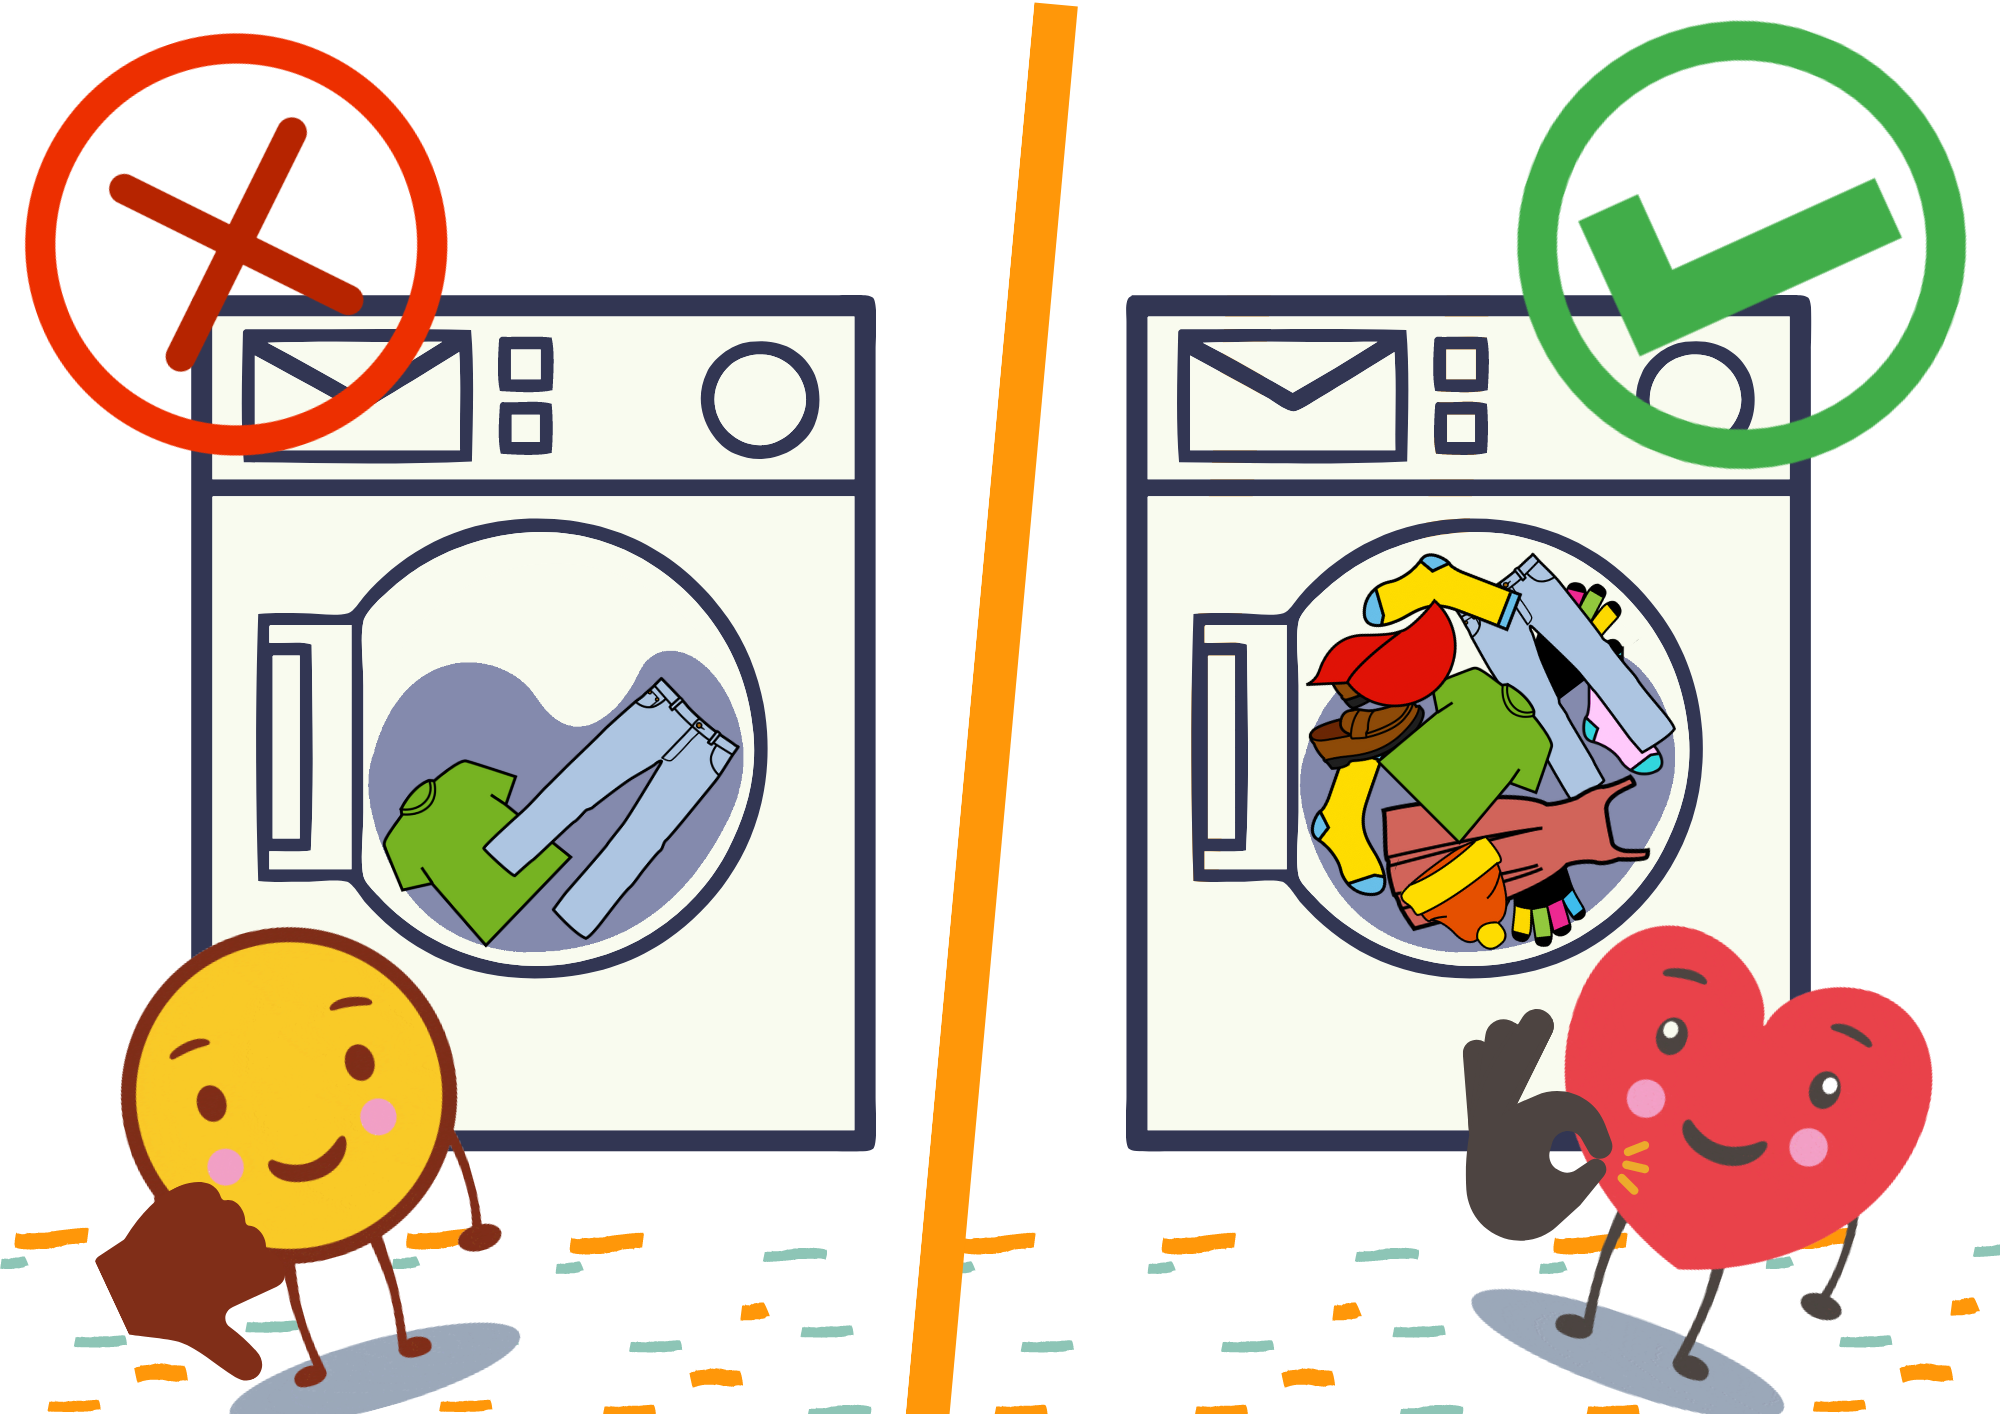 La imagen muestra dos lavadoras, una medio llena con una cruz roja y una llena con un tick verde.